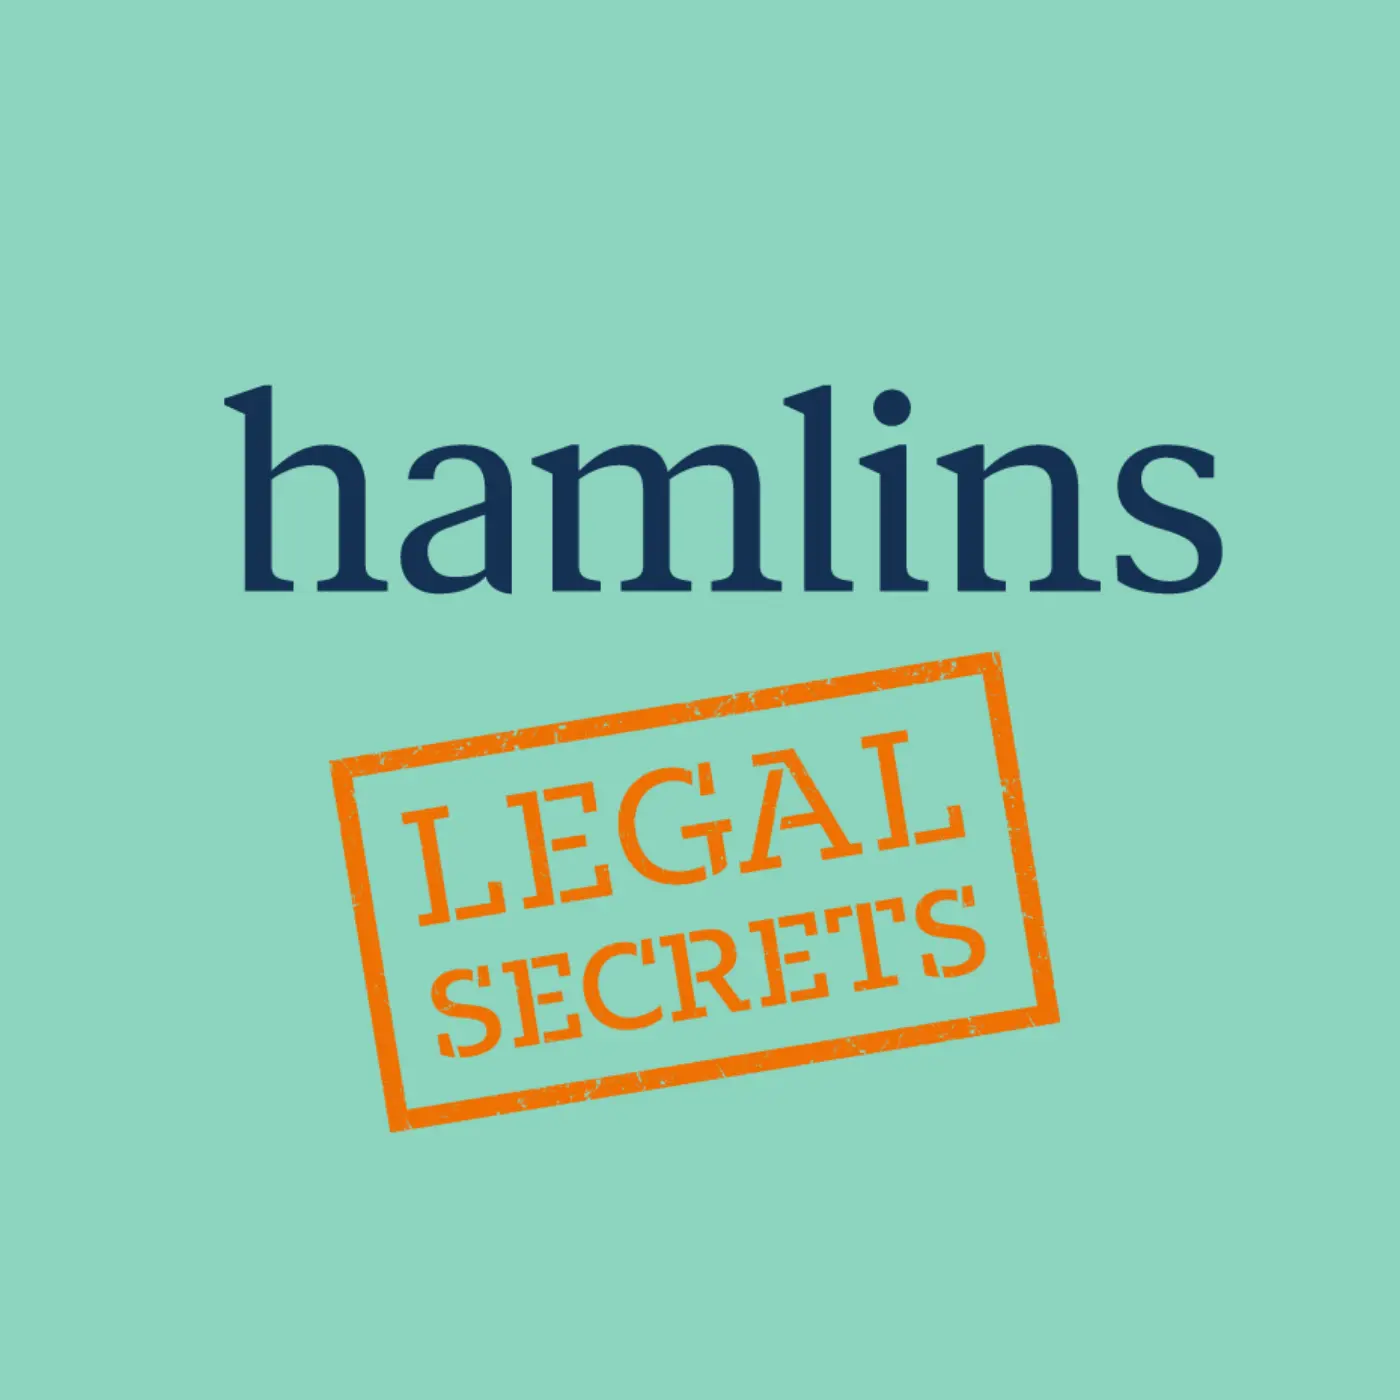 Hamlins shares its Legal Secrets